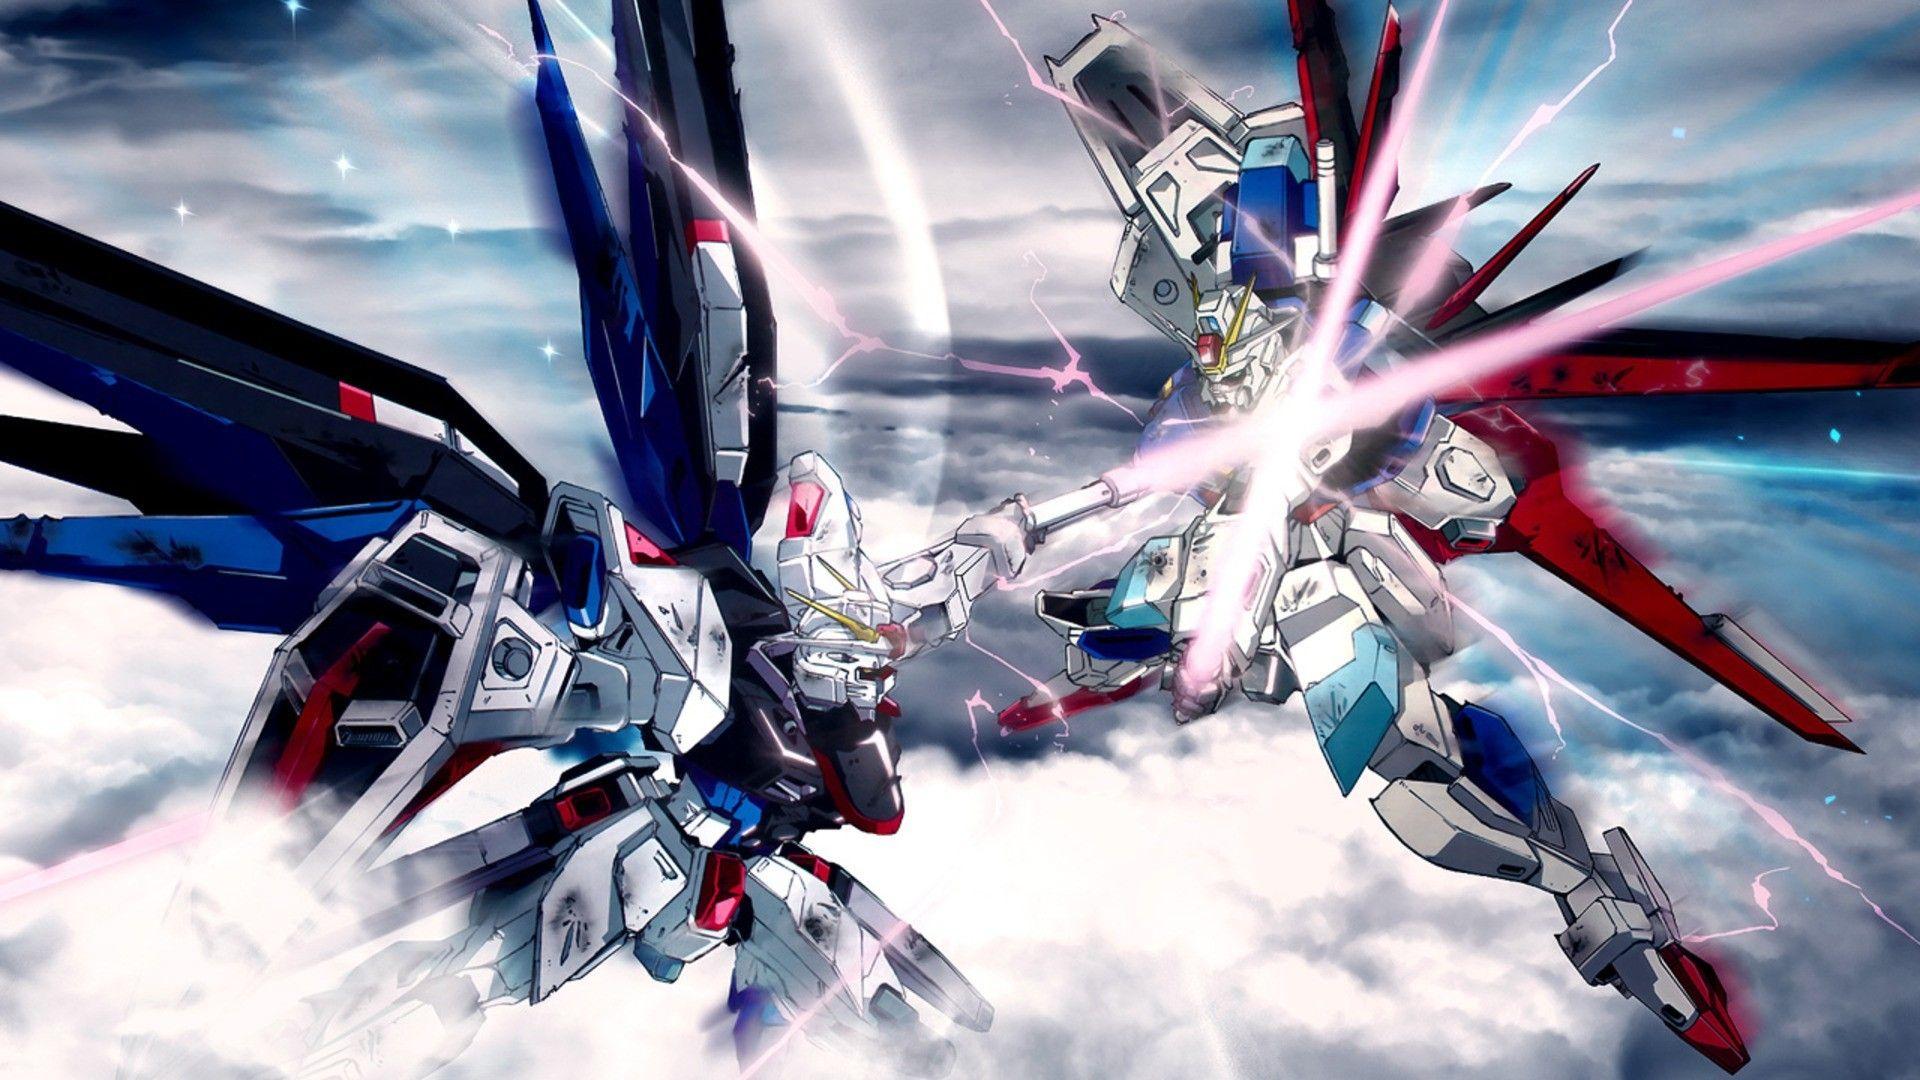 Gundam Desktop Wallpapers - Top Free Gundam Desktop Backgrounds